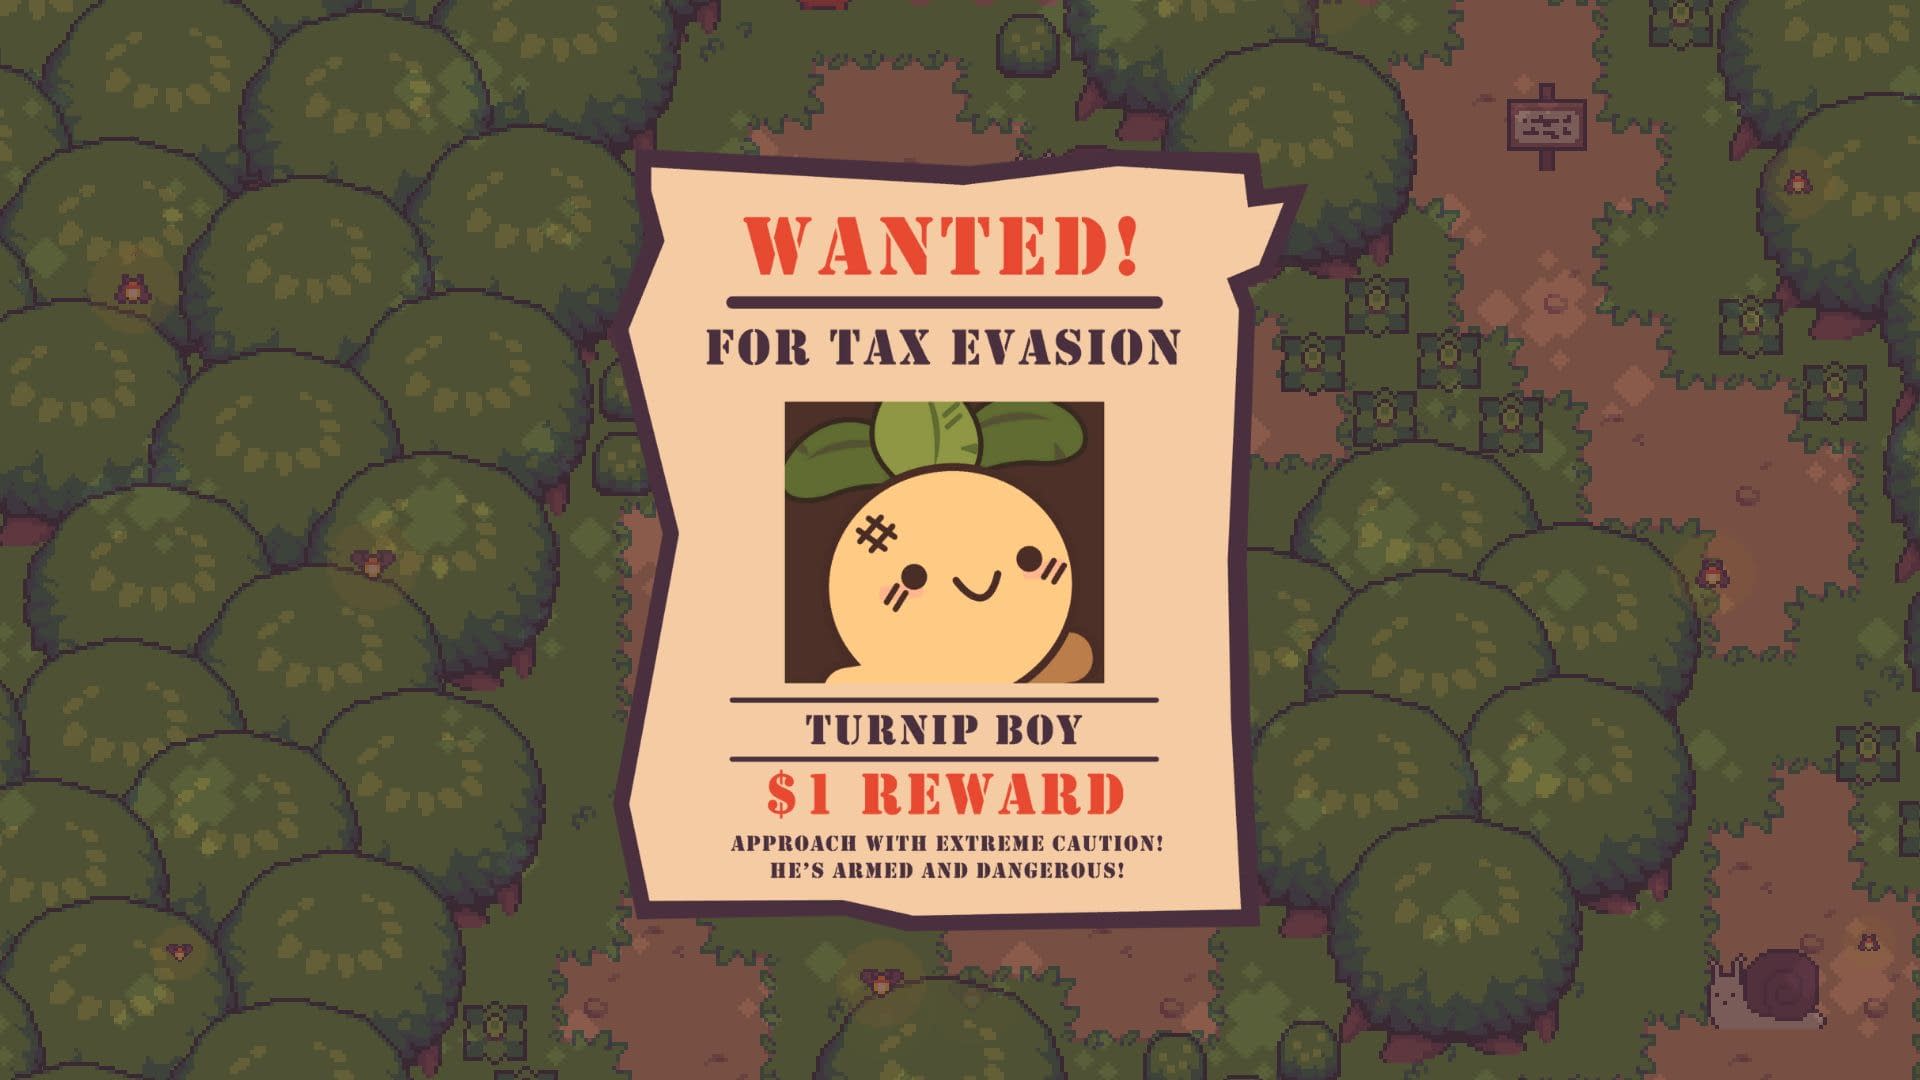 turnip boy commits tax evasion all hats